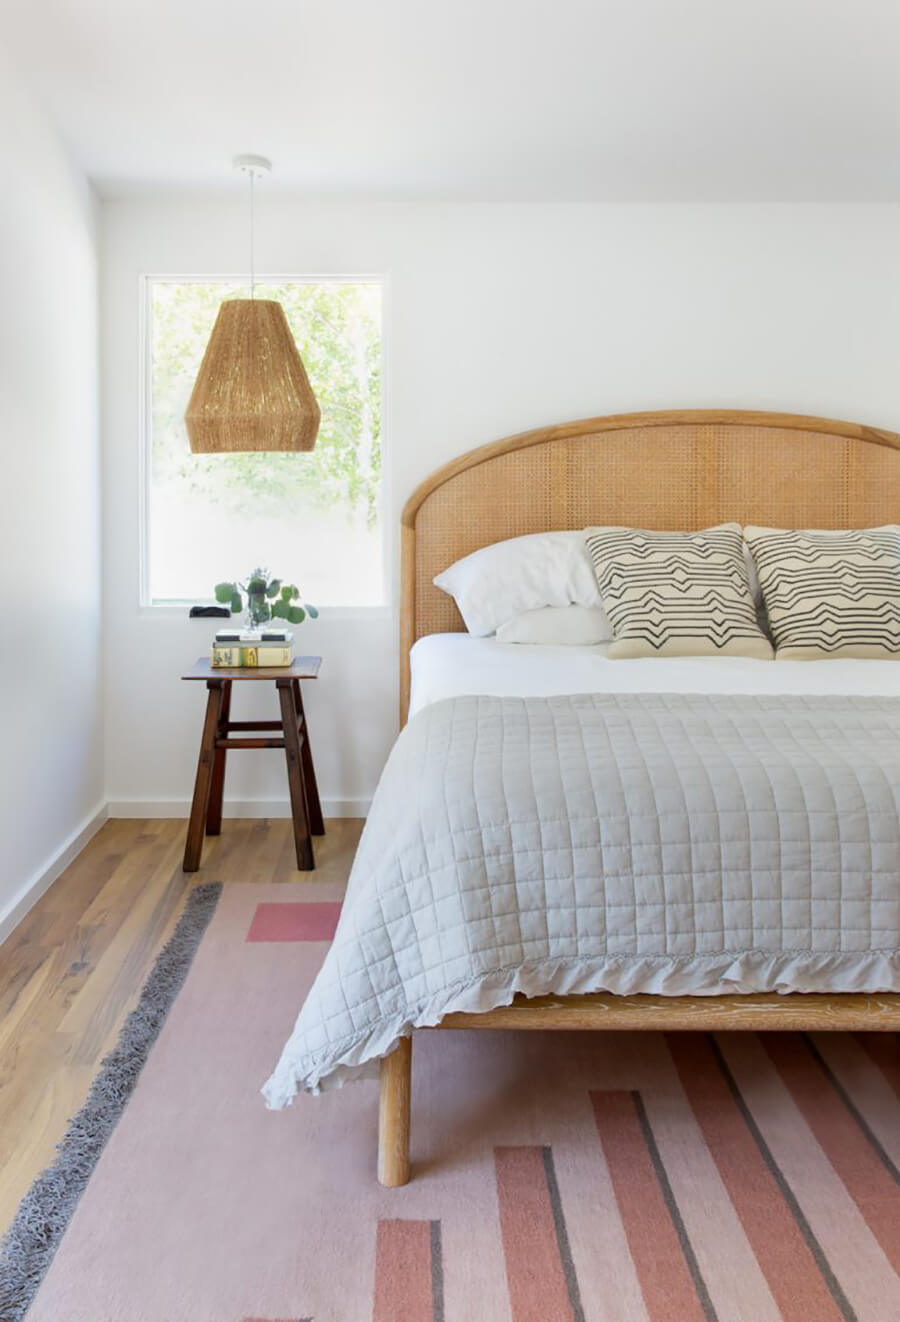 Un dormitorio moderno con una cama con respaldo de bambú 